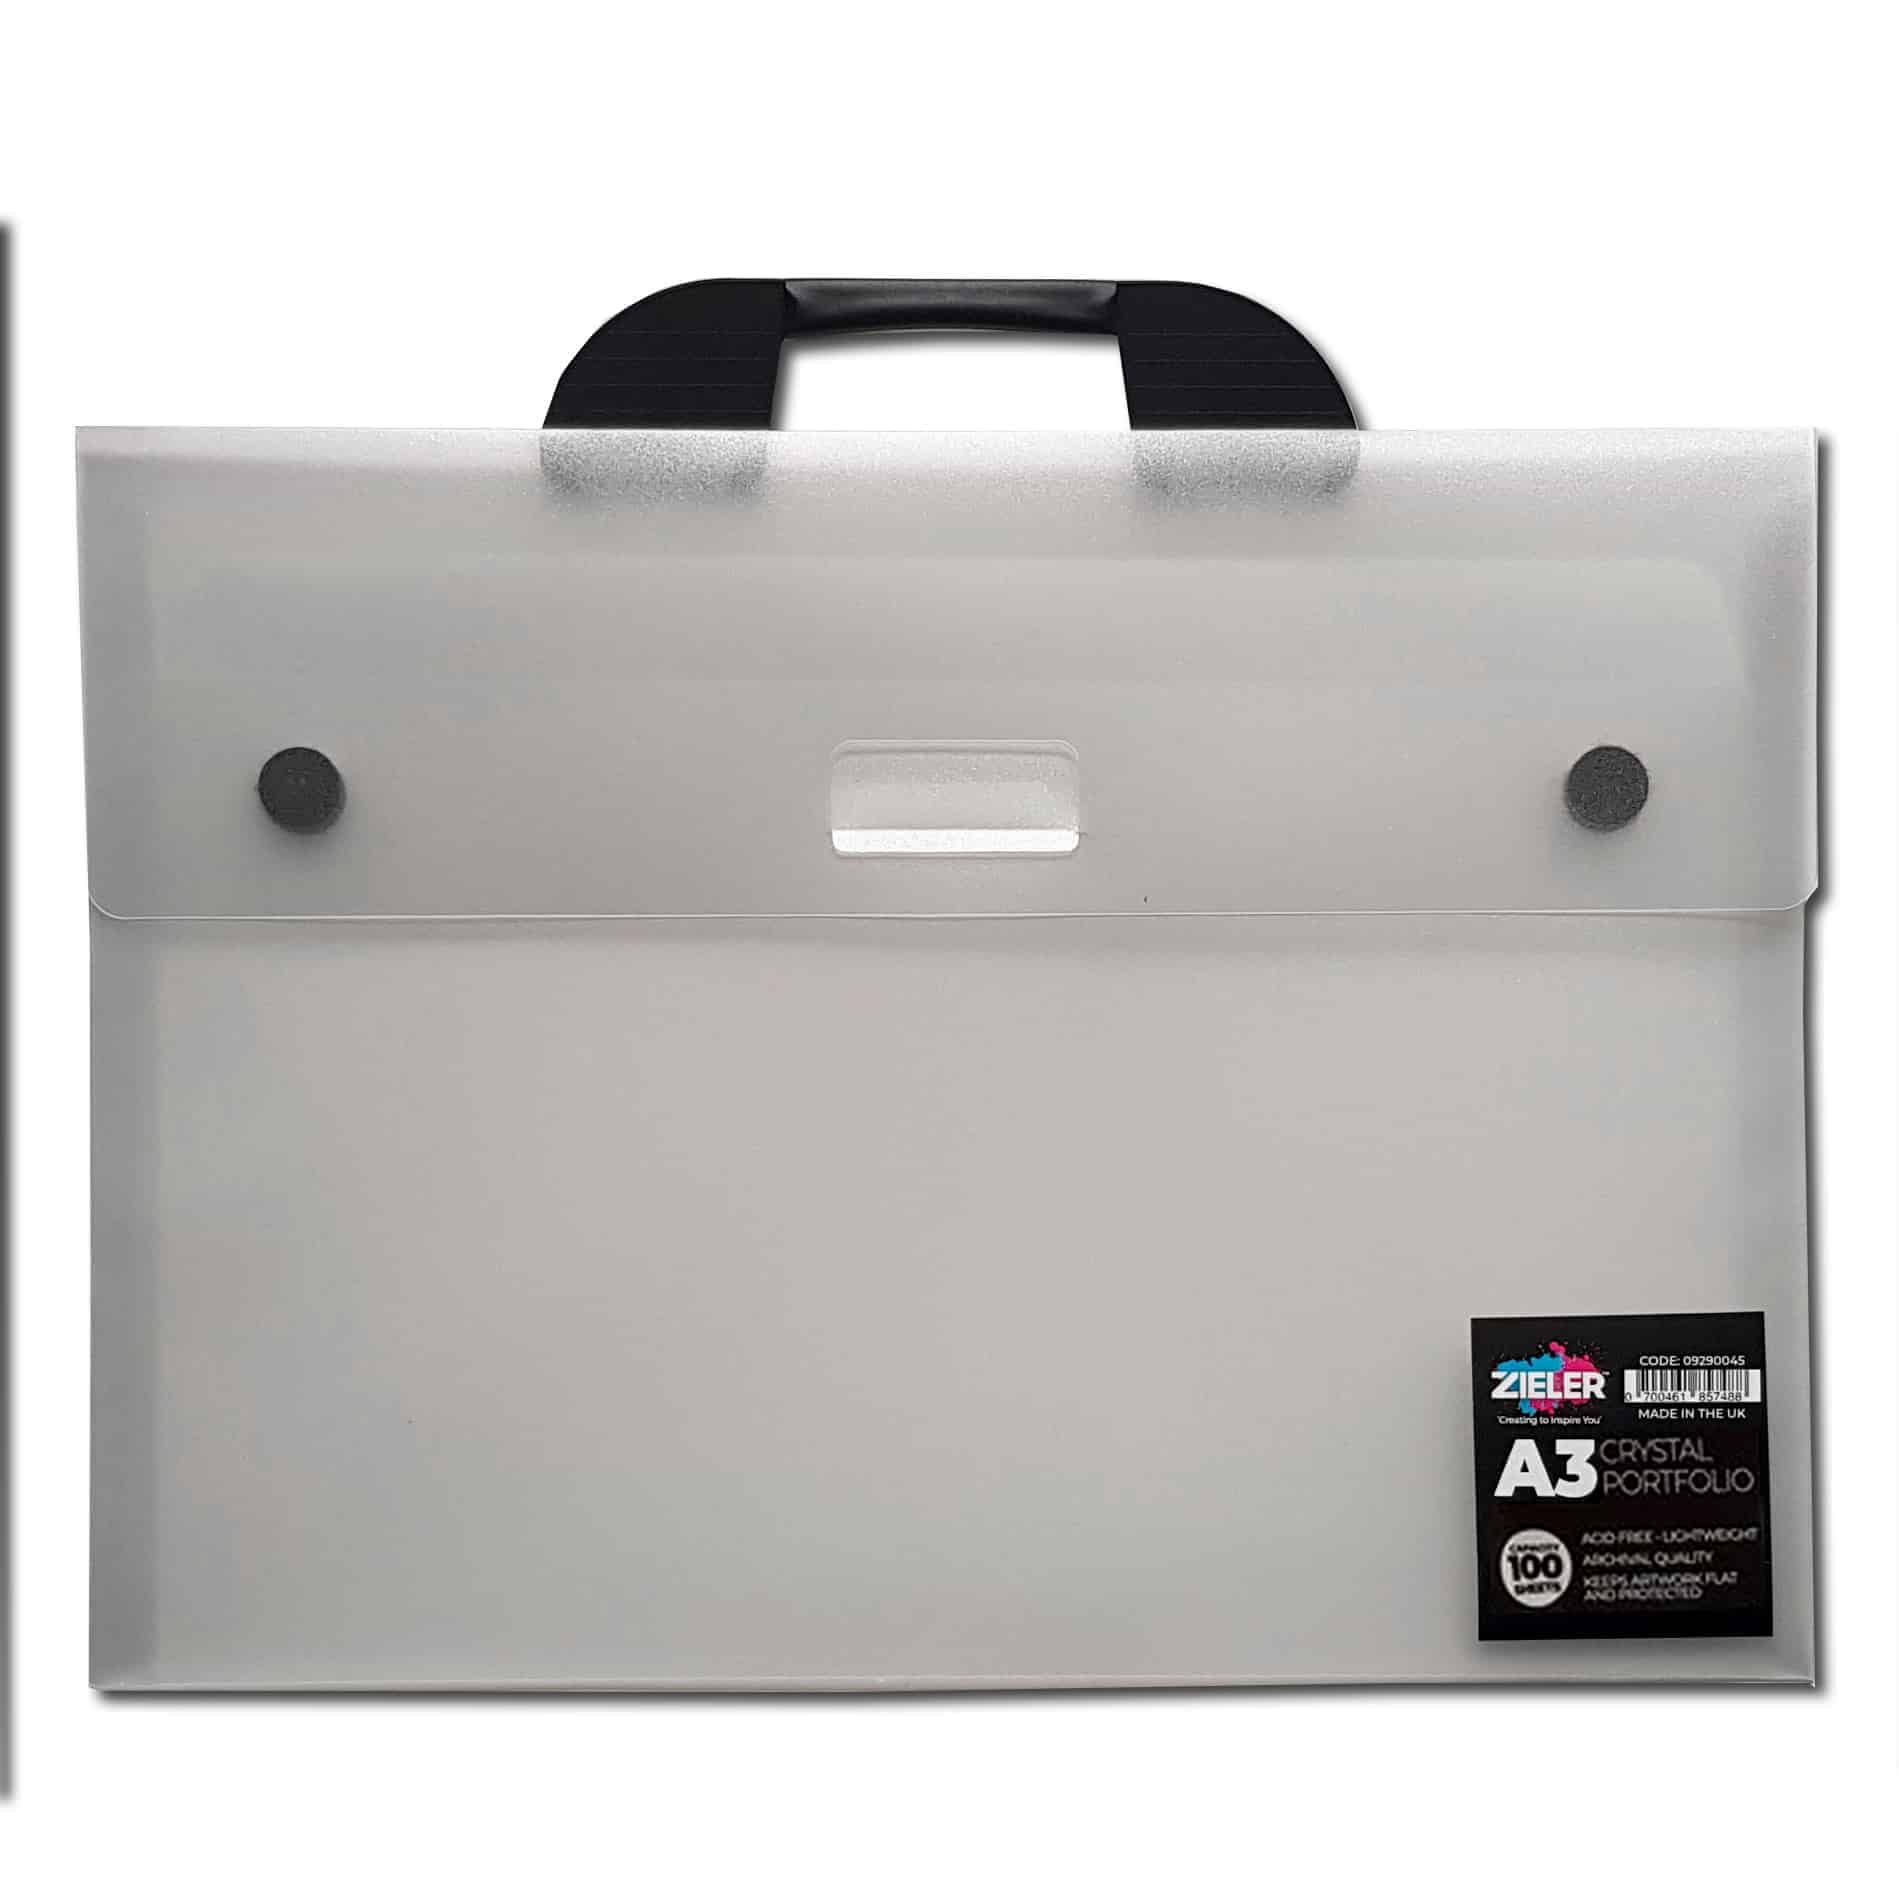 A3 Art Folder, Portfolio Carry Case For Artwork